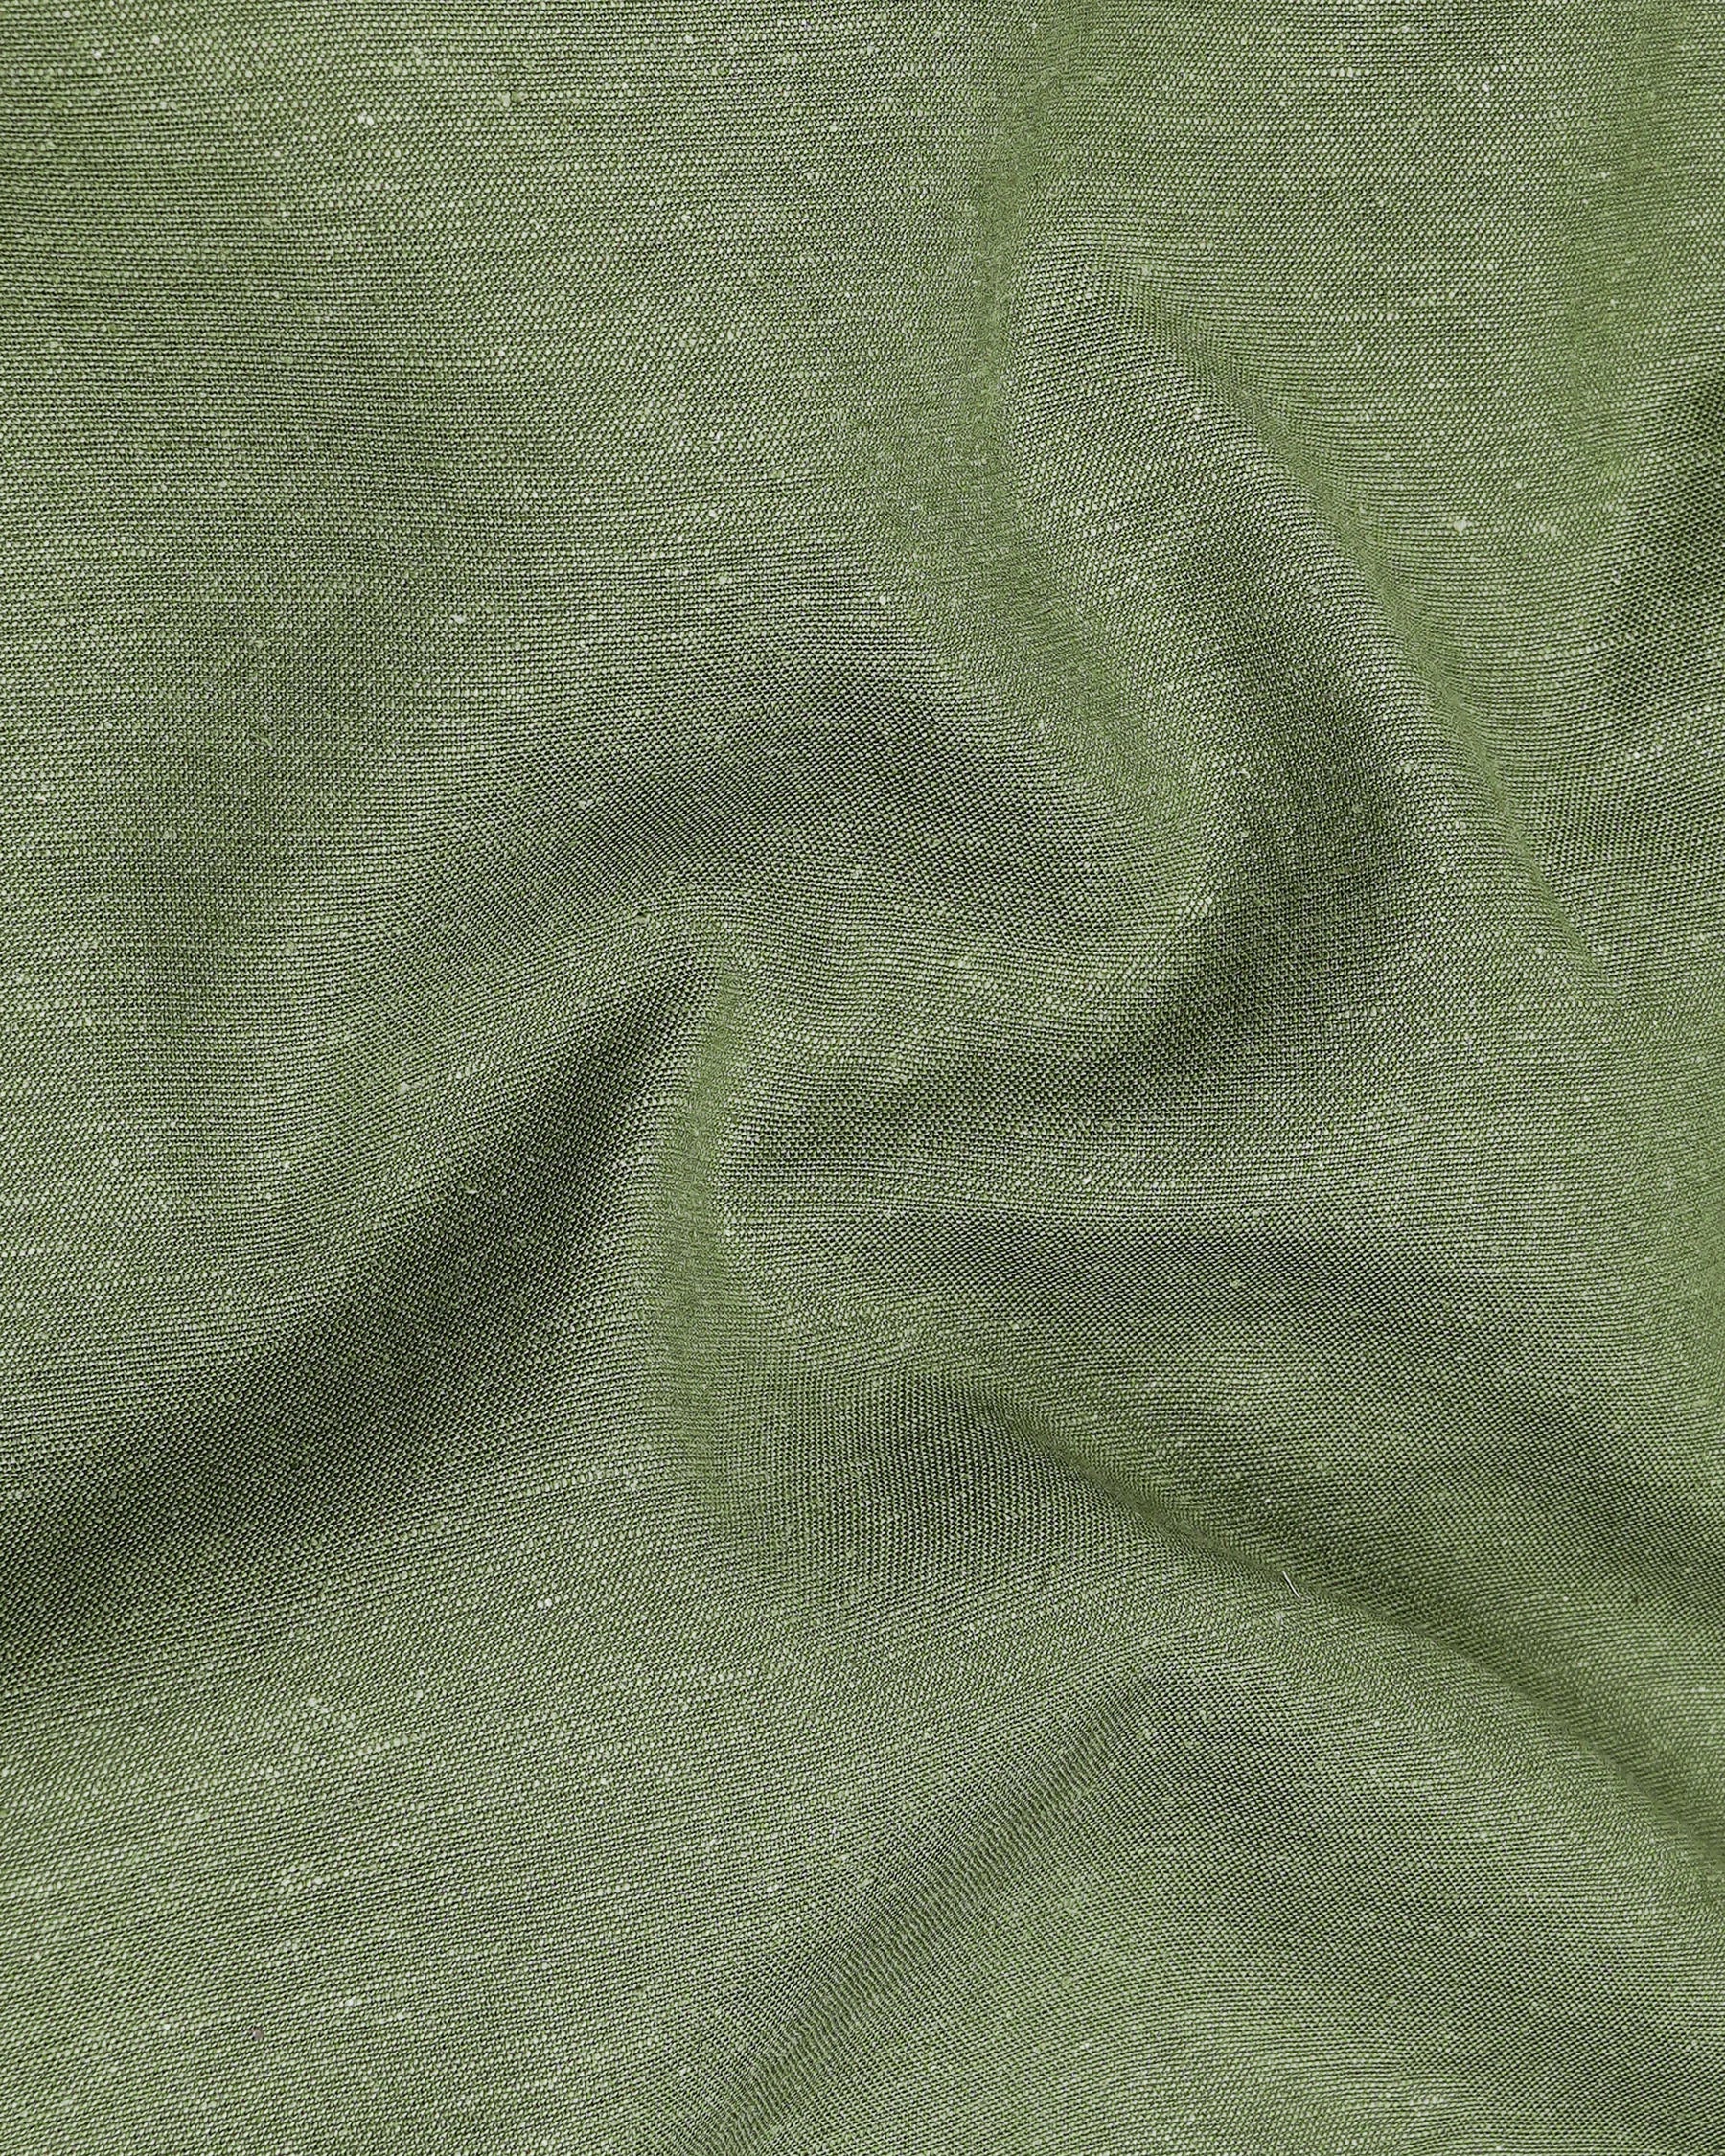 Highland Green Luxurious Linen Shirt 7960-M-38, 7960-M-H-38, 7960-M-39, 7960-M-H-39, 7960-M-40, 7960-M-H-40, 7960-M-42, 7960-M-H-42, 7960-M-44, 7960-M-H-44, 7960-M-46, 7960-M-H-46, 7960-M-48, 7960-M-H-48, 7960-M-50, 7960-M-H-50, 7960-M-52, 7960-M-H-52